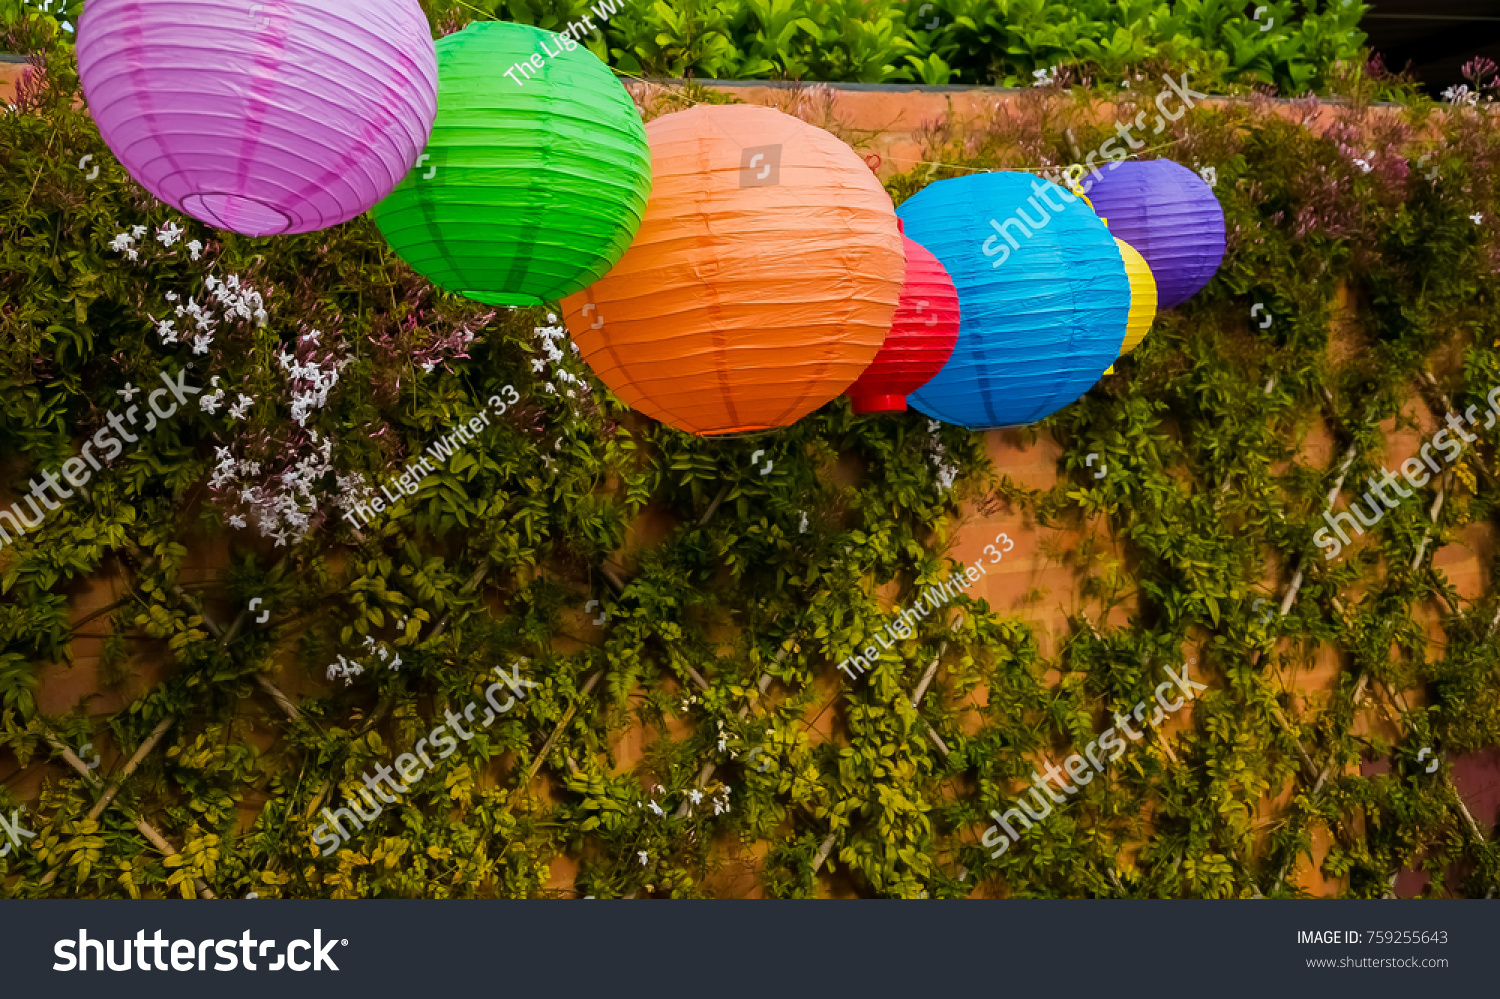 garden paper lanterns